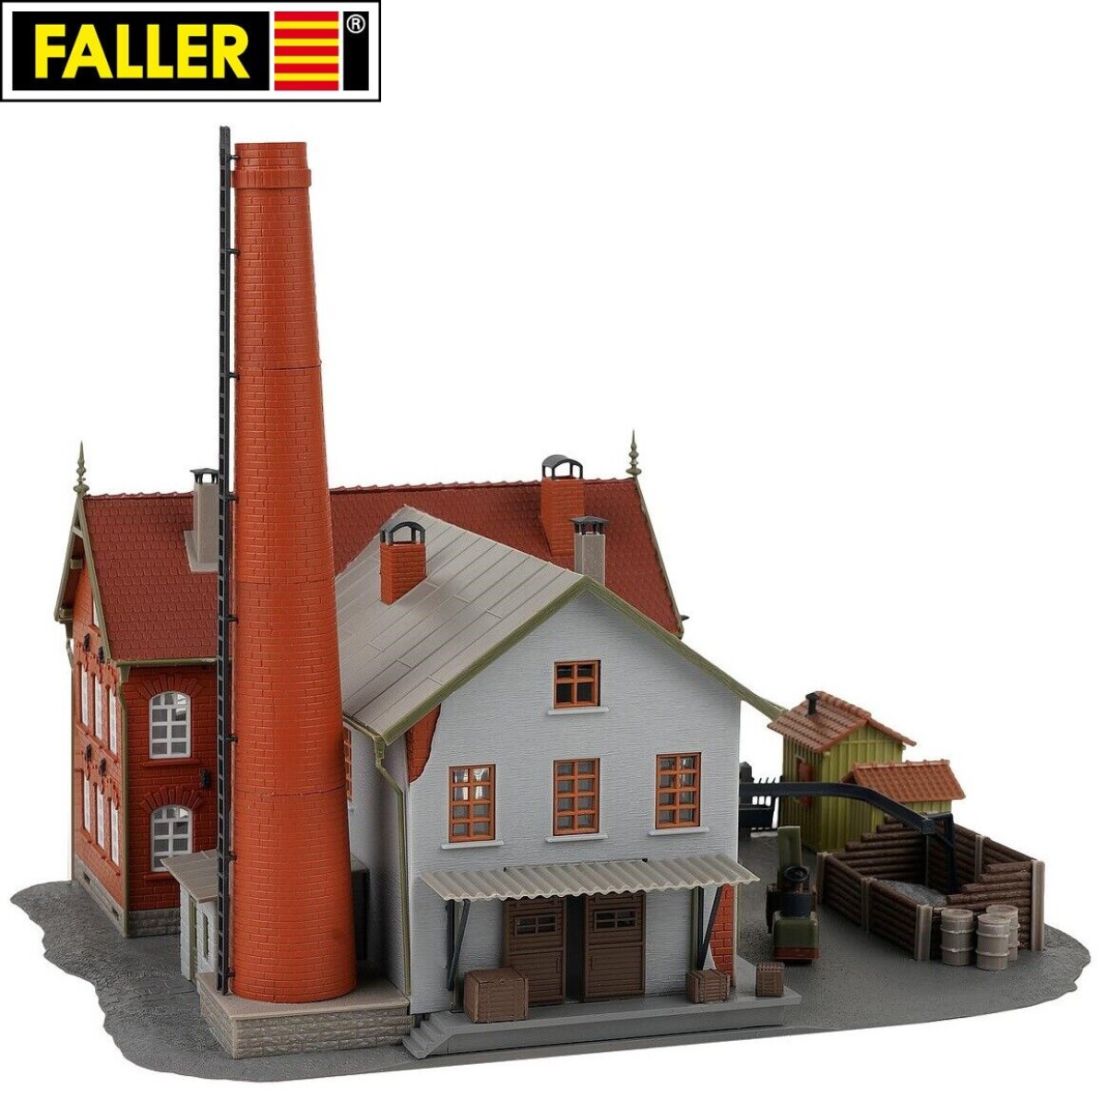 Faller H0 109265 B-265 Altes Fabrikgebäude 